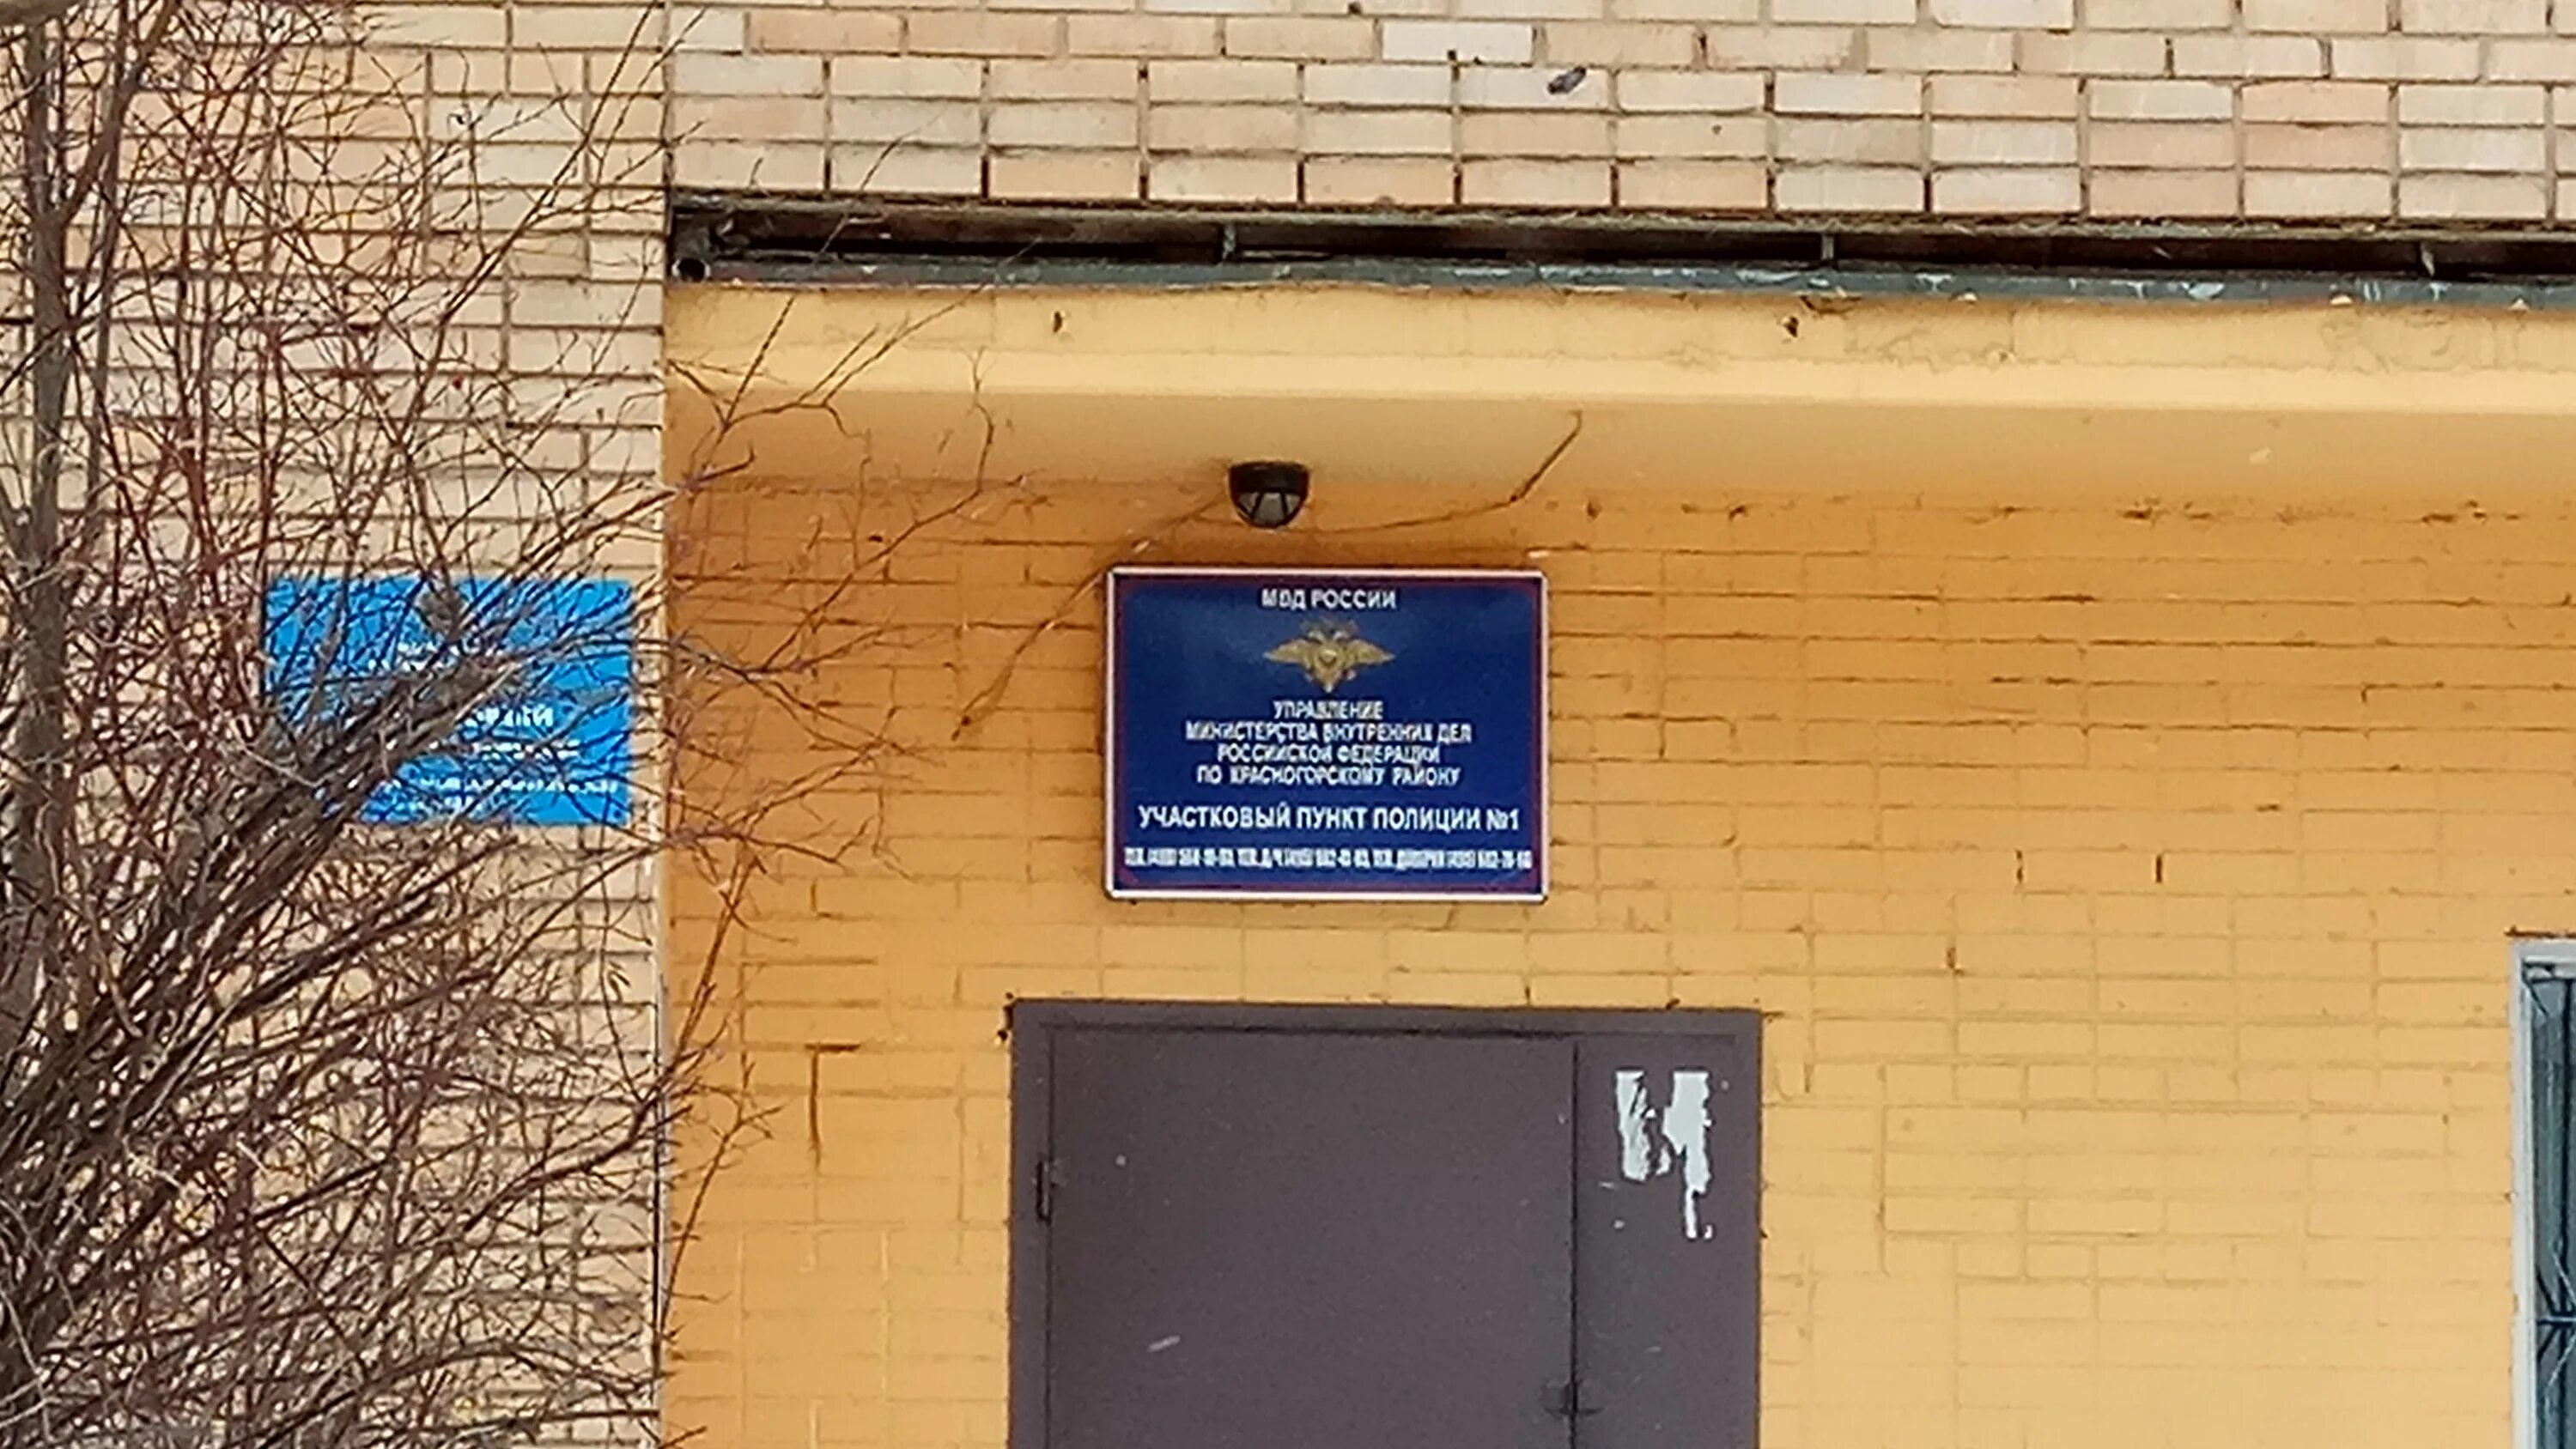 Отдел полиции красногорск московской области